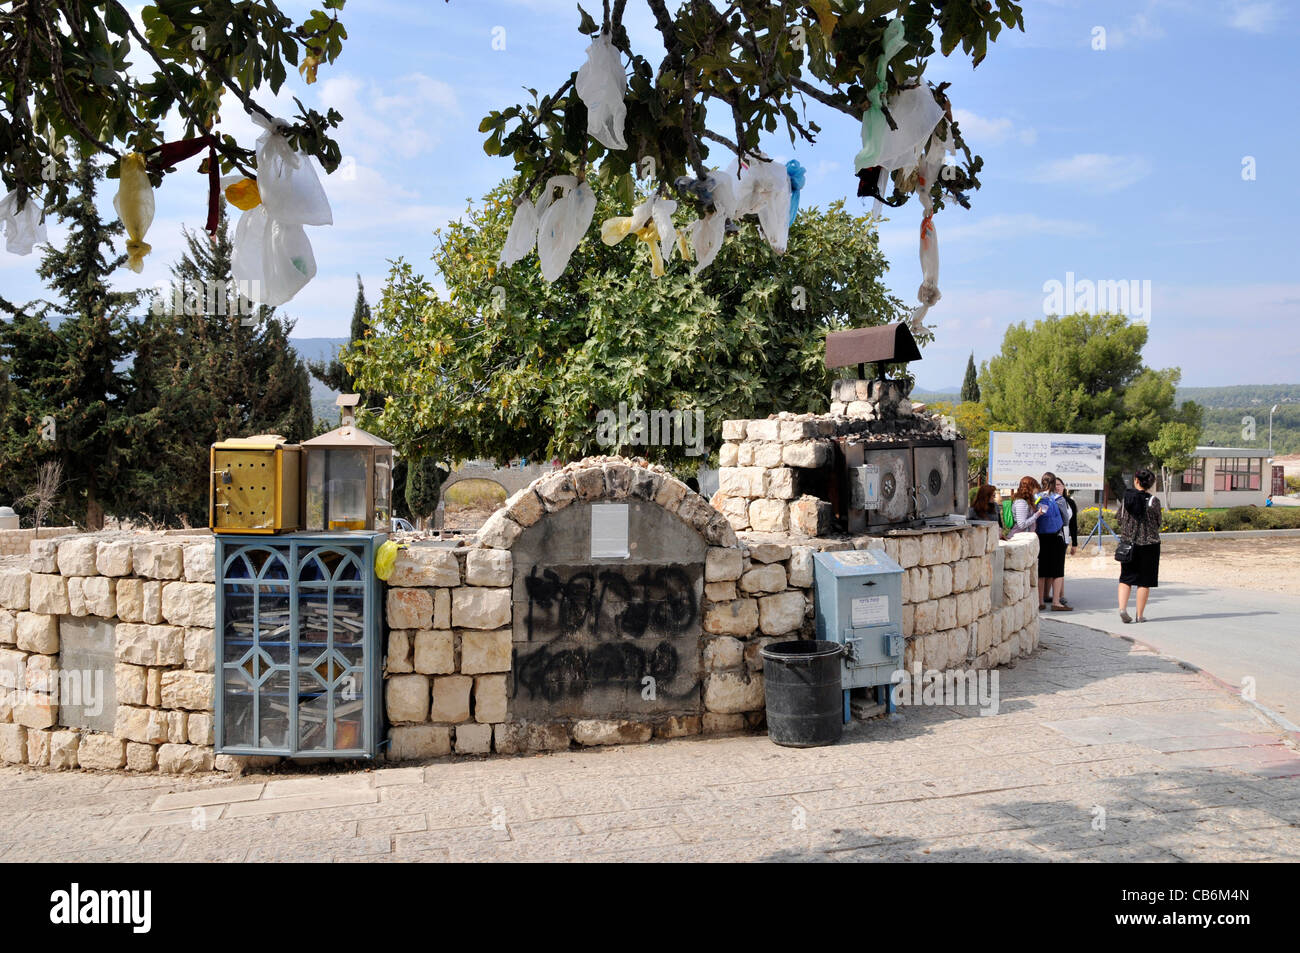 Les jeunes pèlerins près de partie spéciale de l'ancien cimetière juif de Safed, Tibériade, Israël,Tzfat, Asie, Moyen Orient Banque D'Images